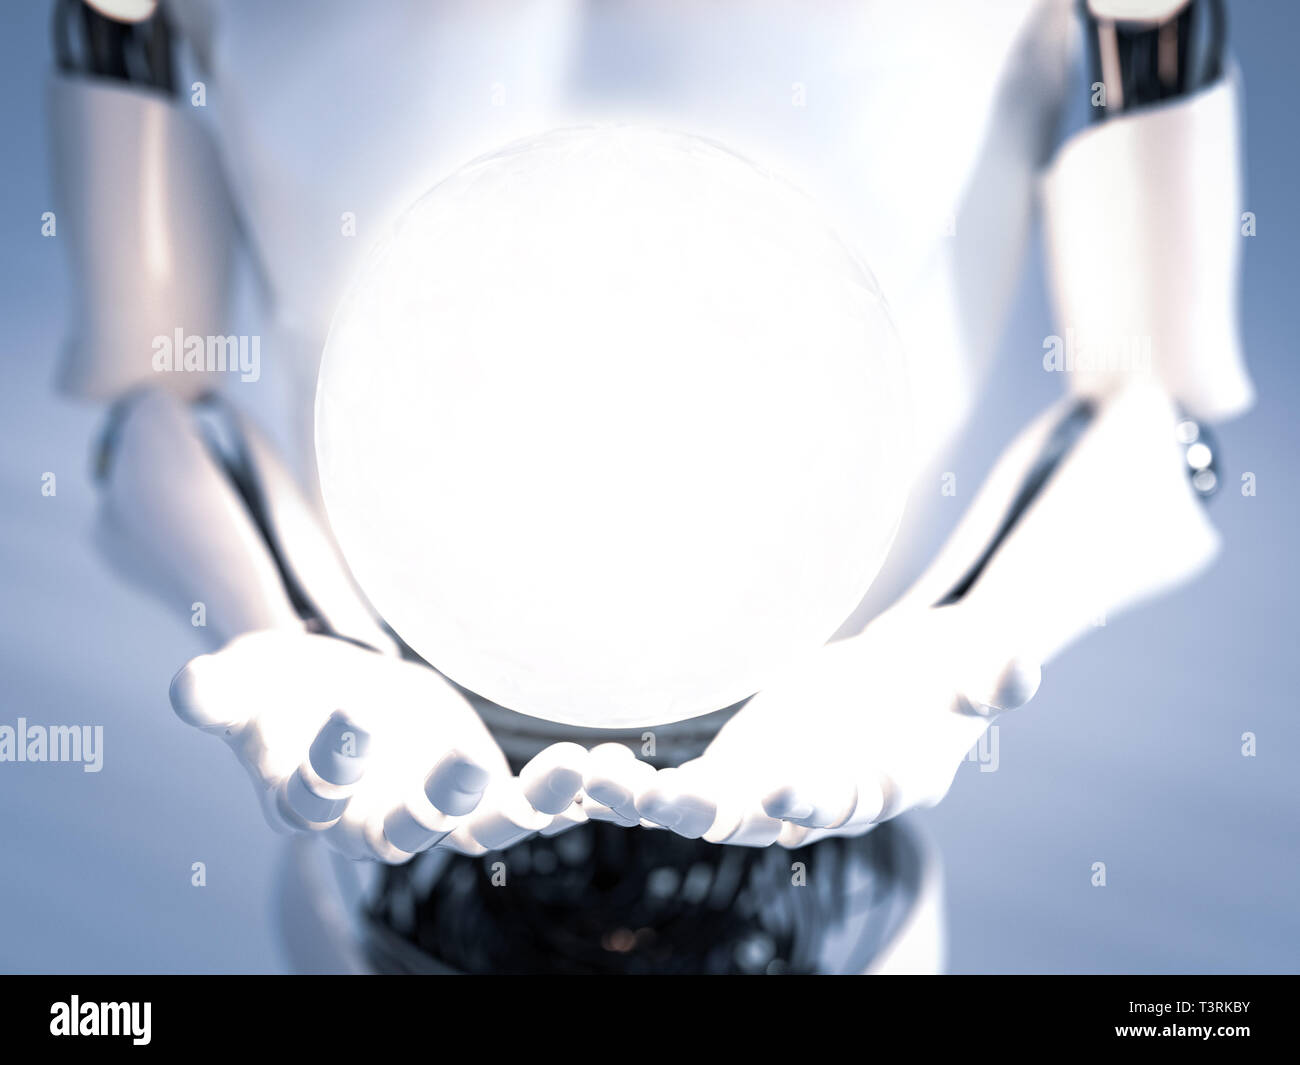 Le rendu 3D de l'homme robot-mains avec une sphère d'énergie rayonnante de lumière ou planant au-dessus de eux. Concept de l'énergie. Banque D'Images